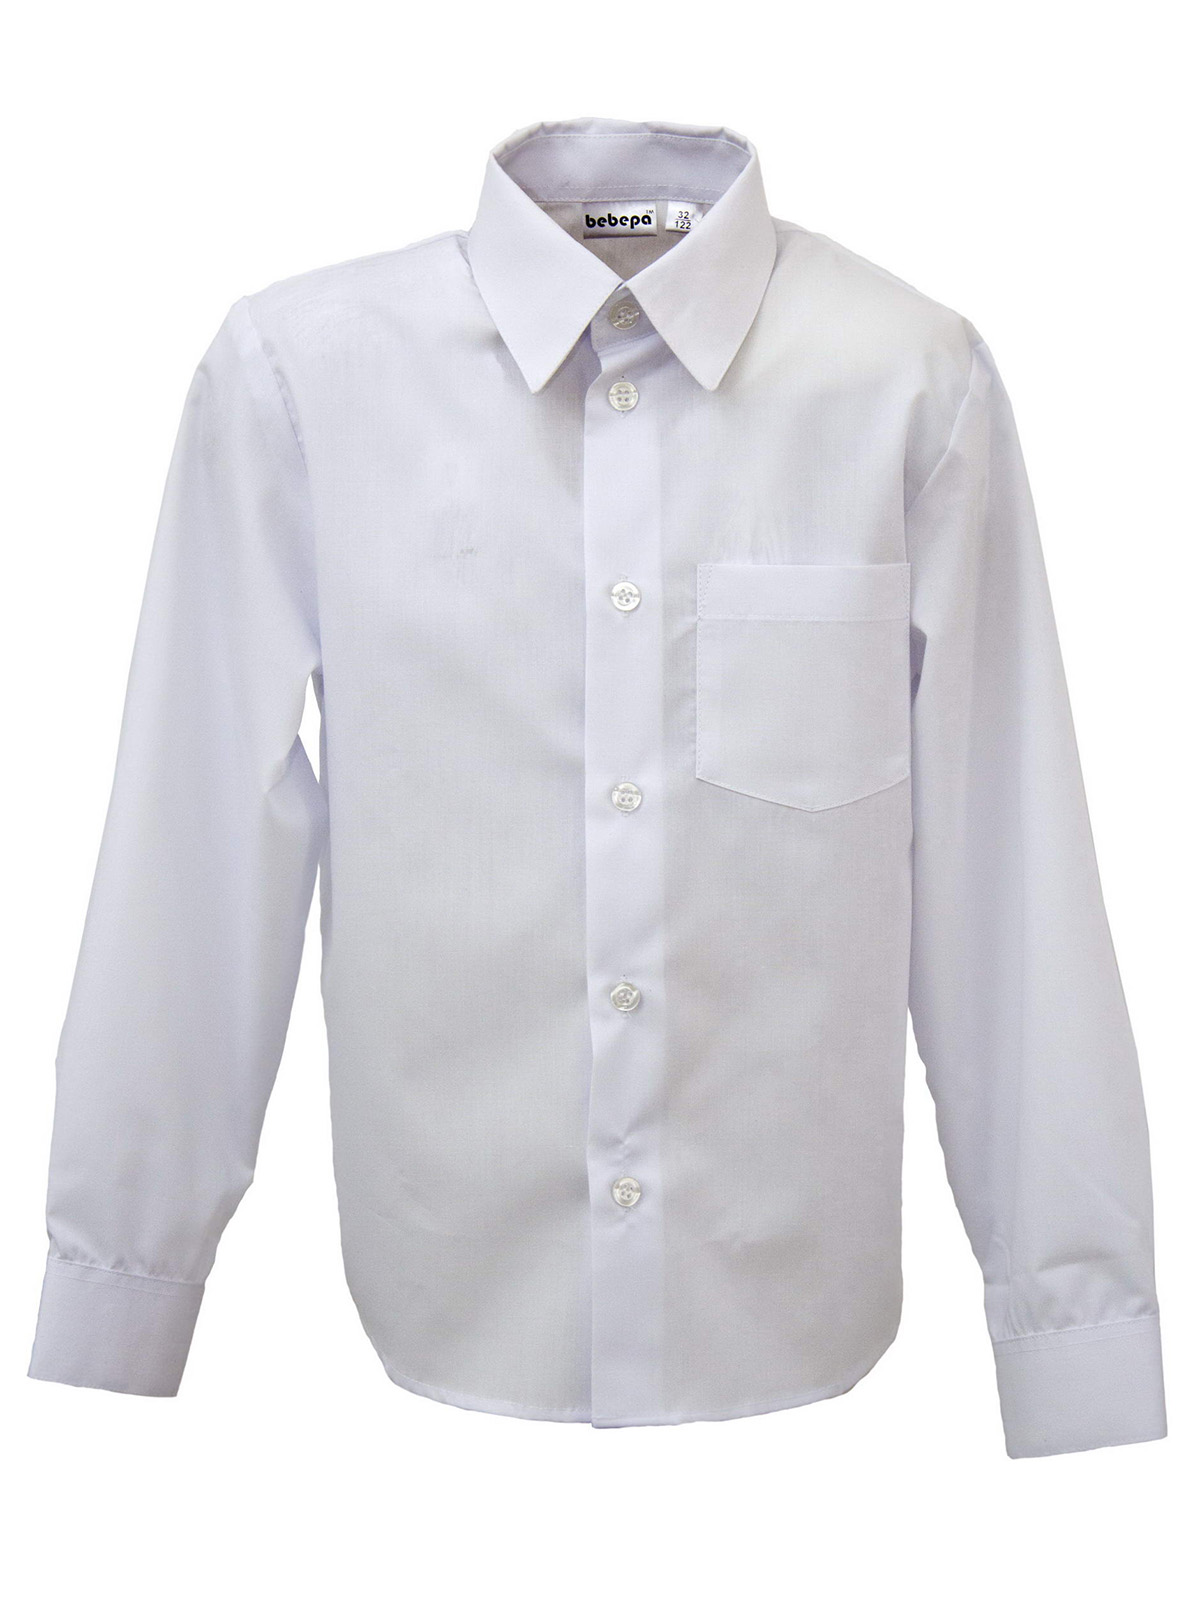 Белые рубашки для мальчиков